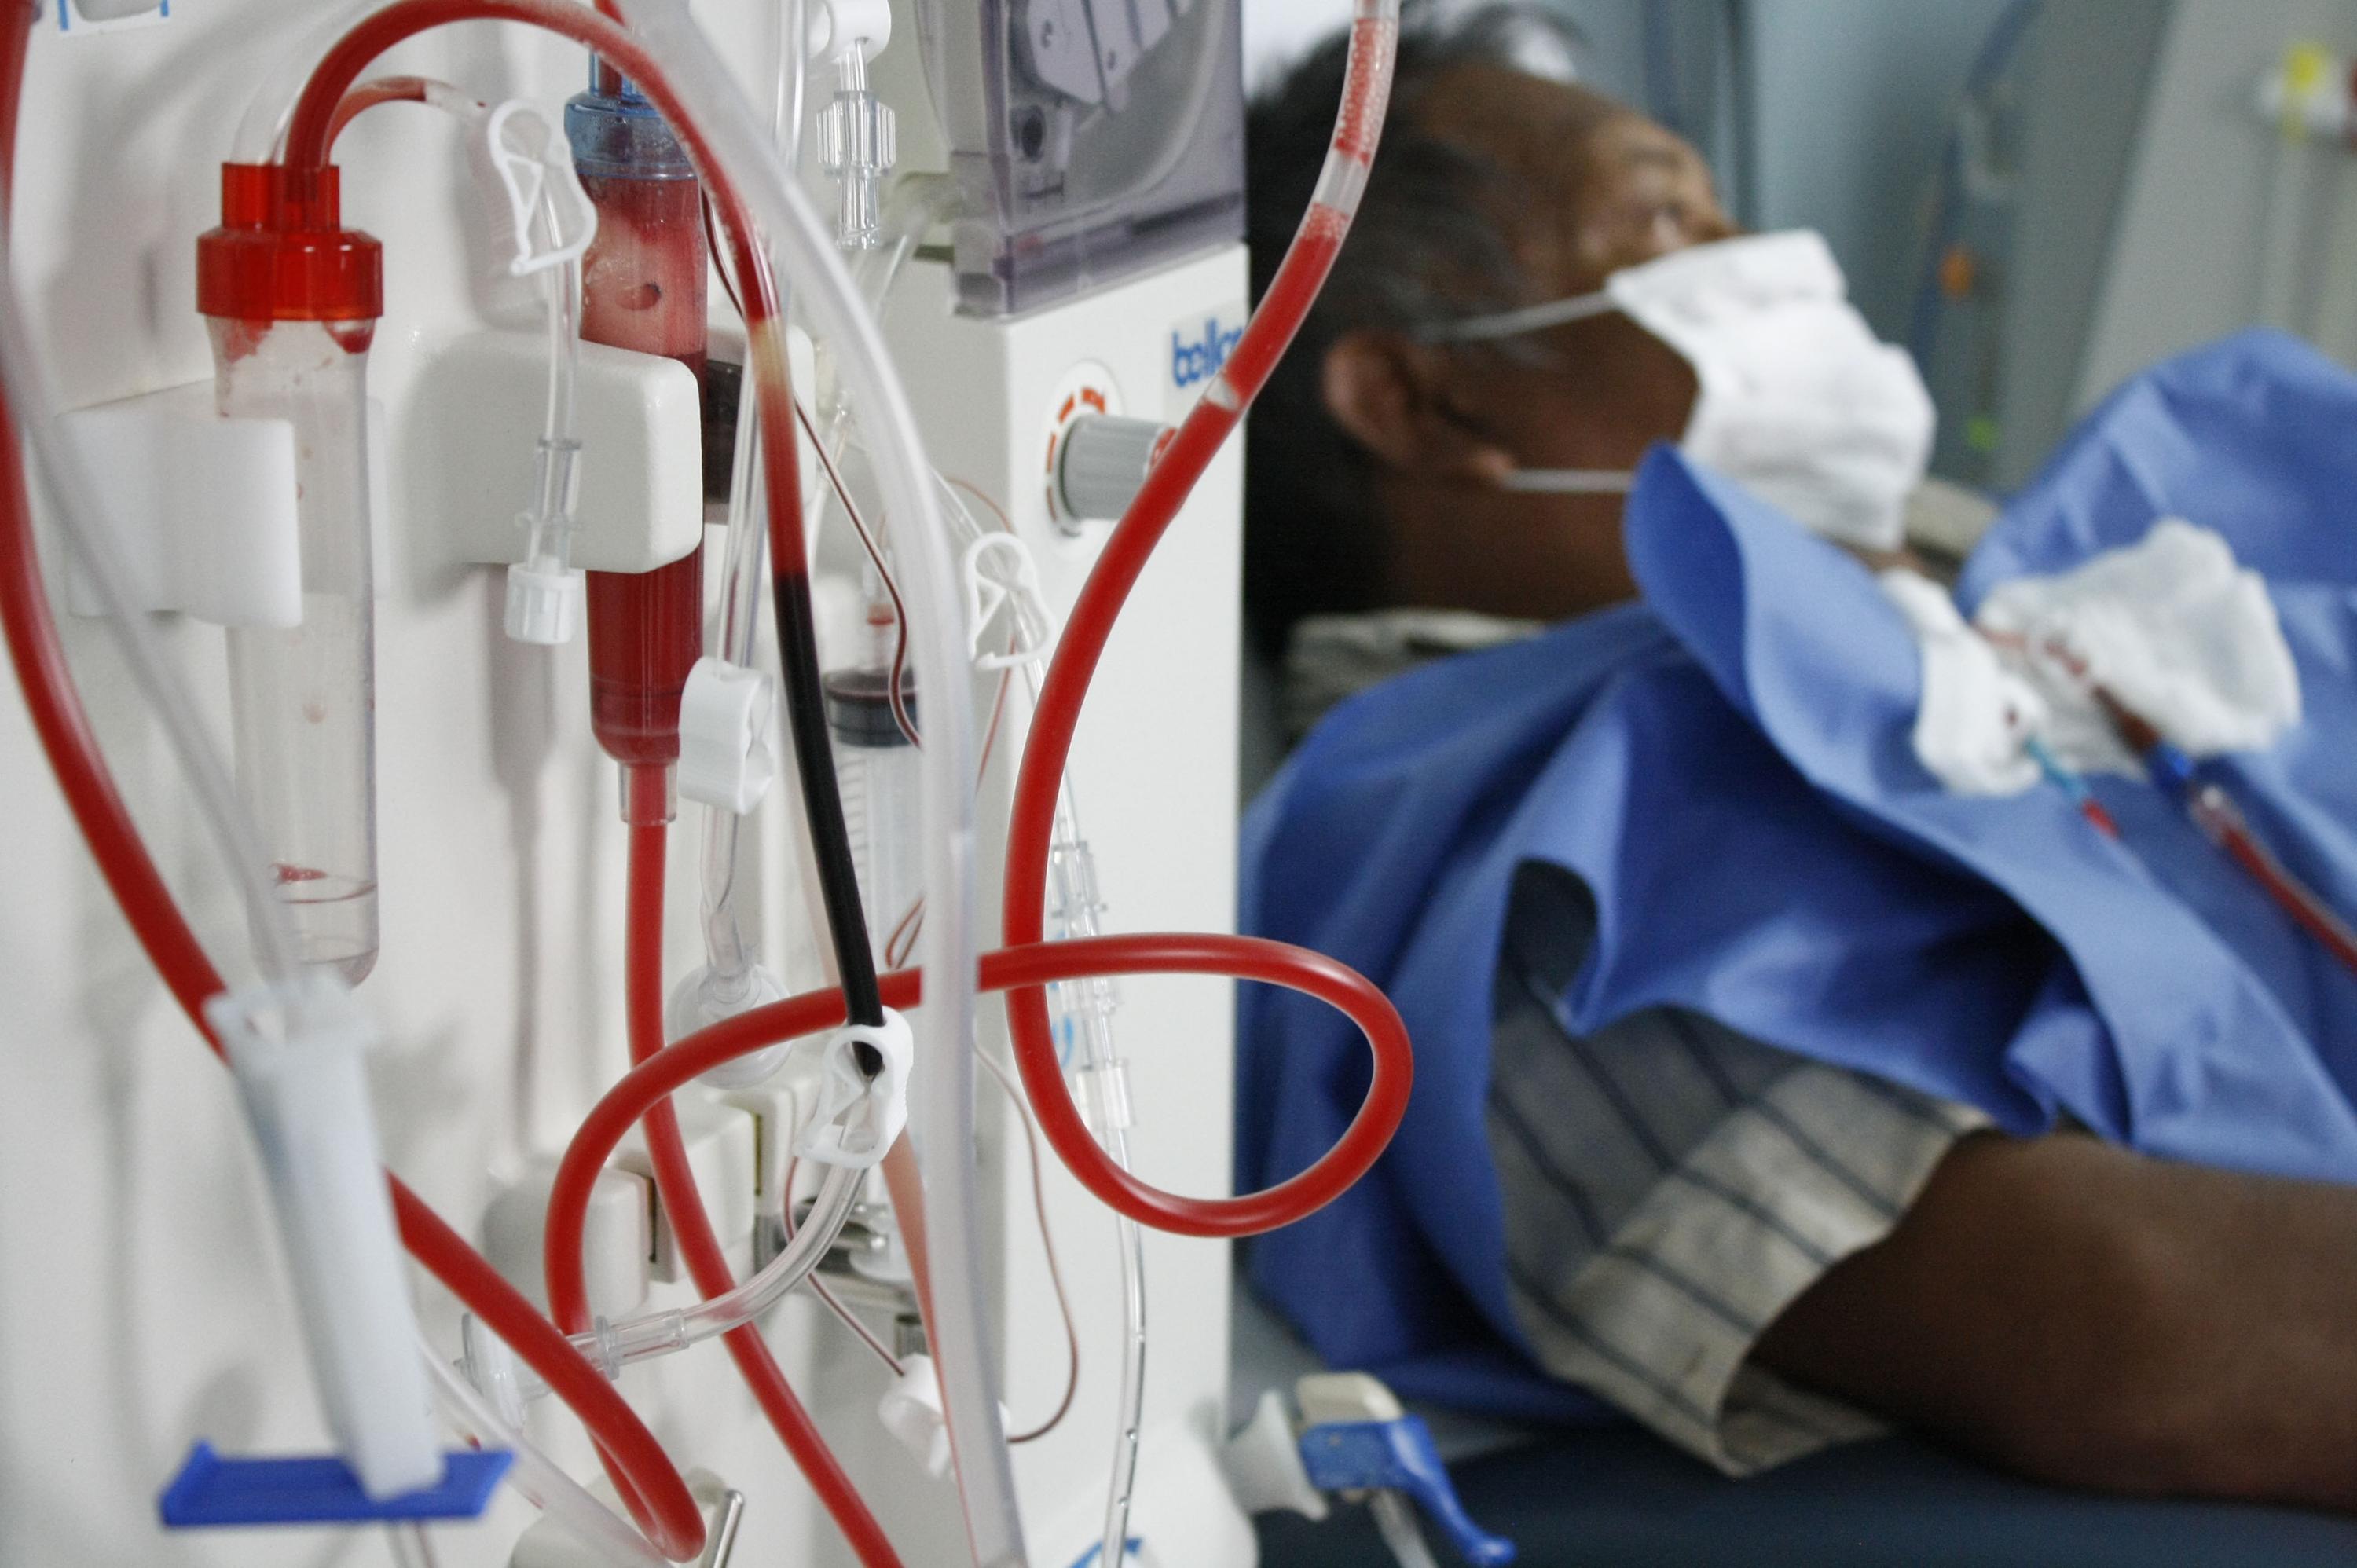 Bancos de sangre de las dos unidades hospitalarias se mantienen en funcionamiento con los protocolos de seguridad contra el COVID-19